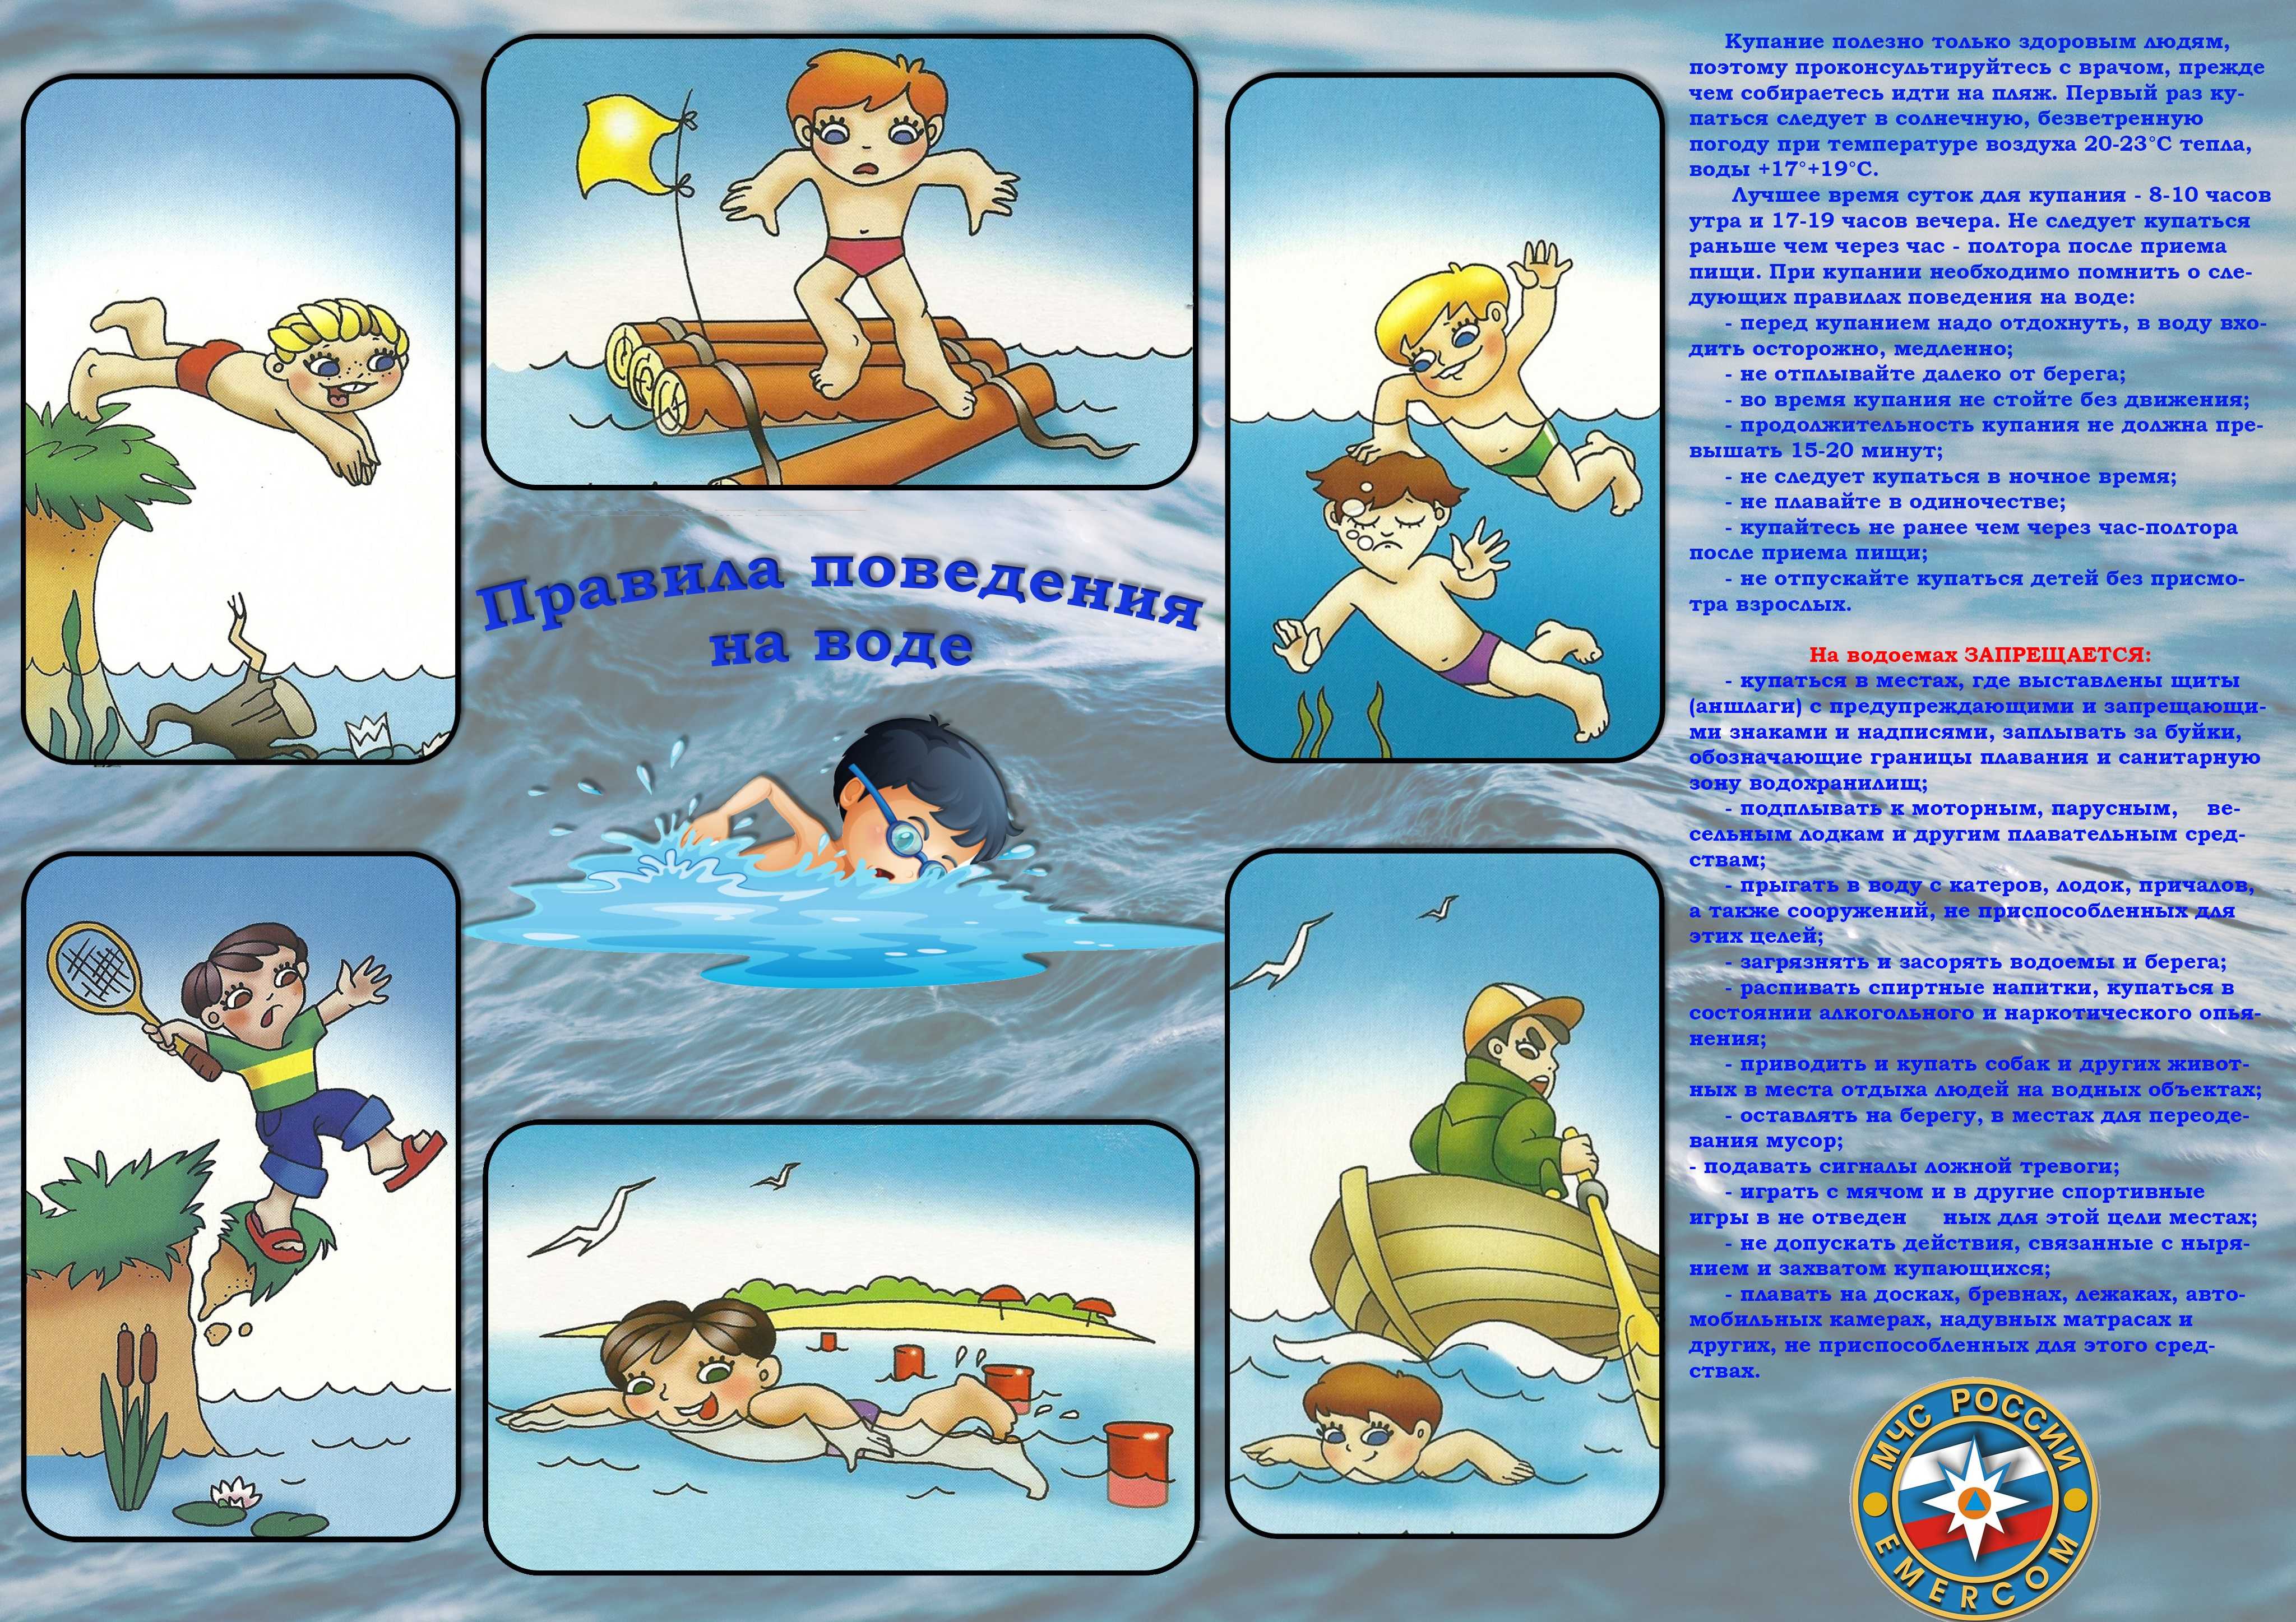 Полезные и обучающие мультфильмы о безопасности в быту, на воде, на дороге.

		гуо "пуховичский детский сад - базовая школа"